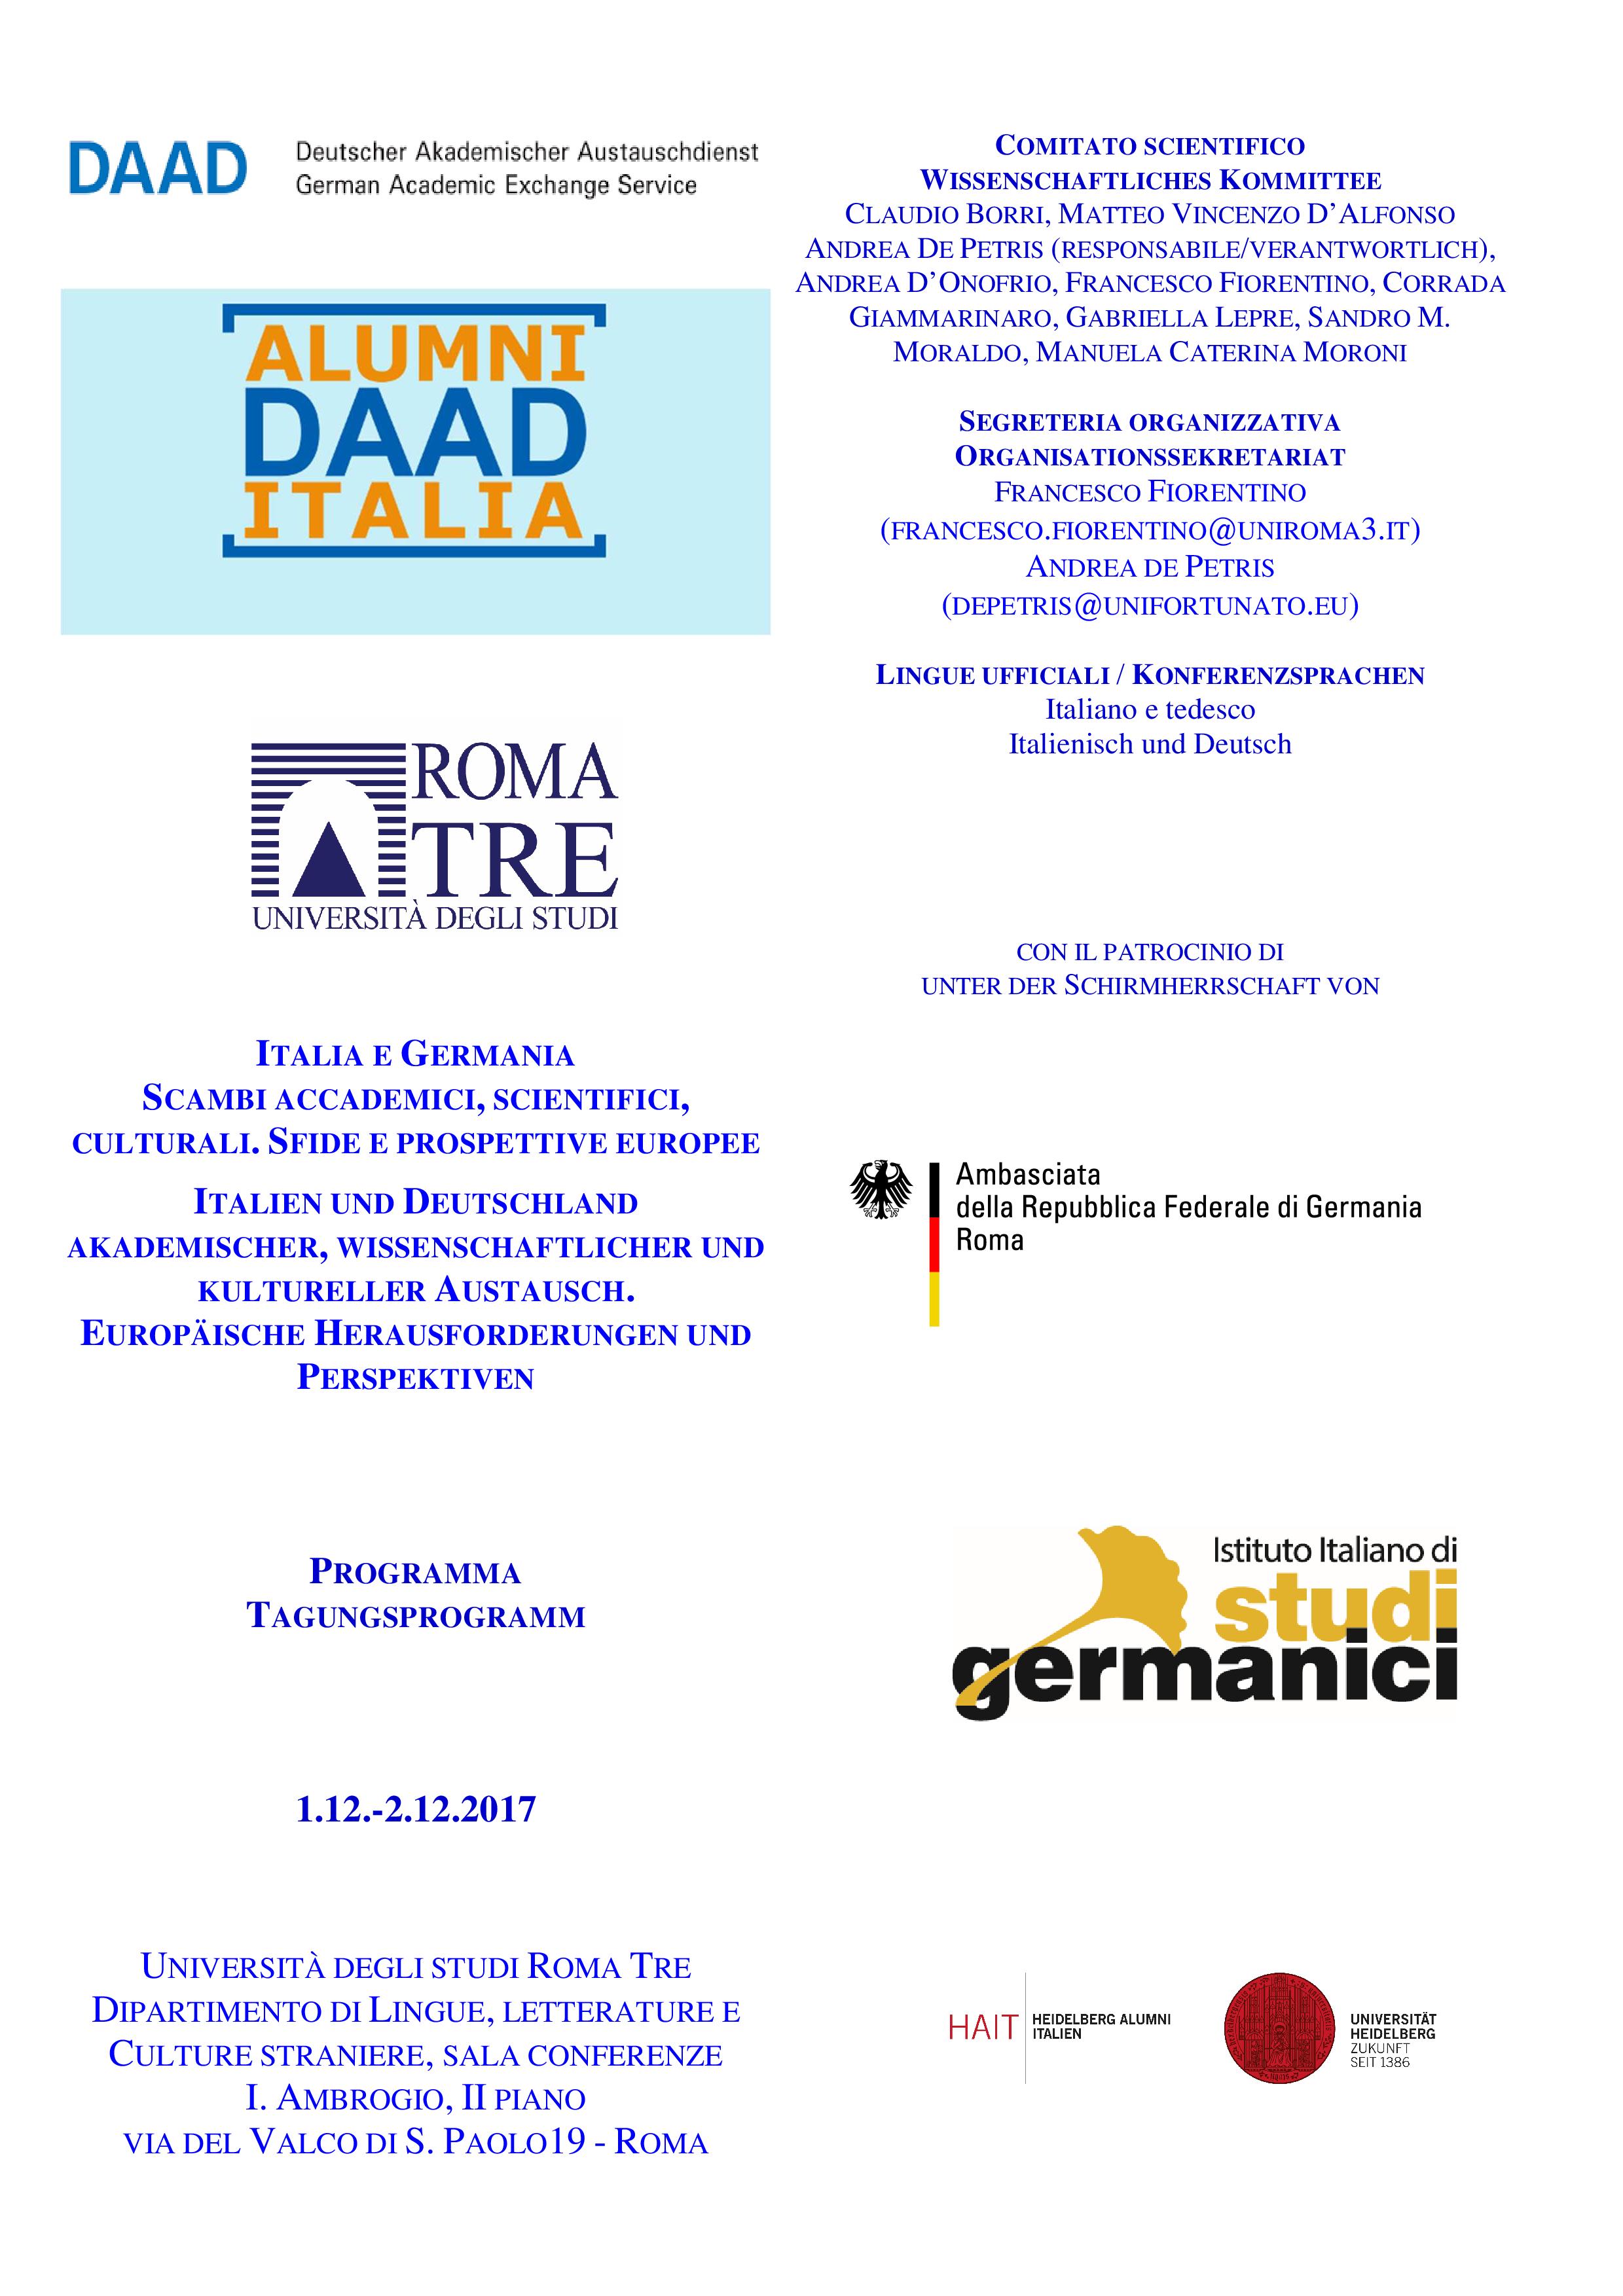 ADI_Programma_Dicembre_2017-page-001